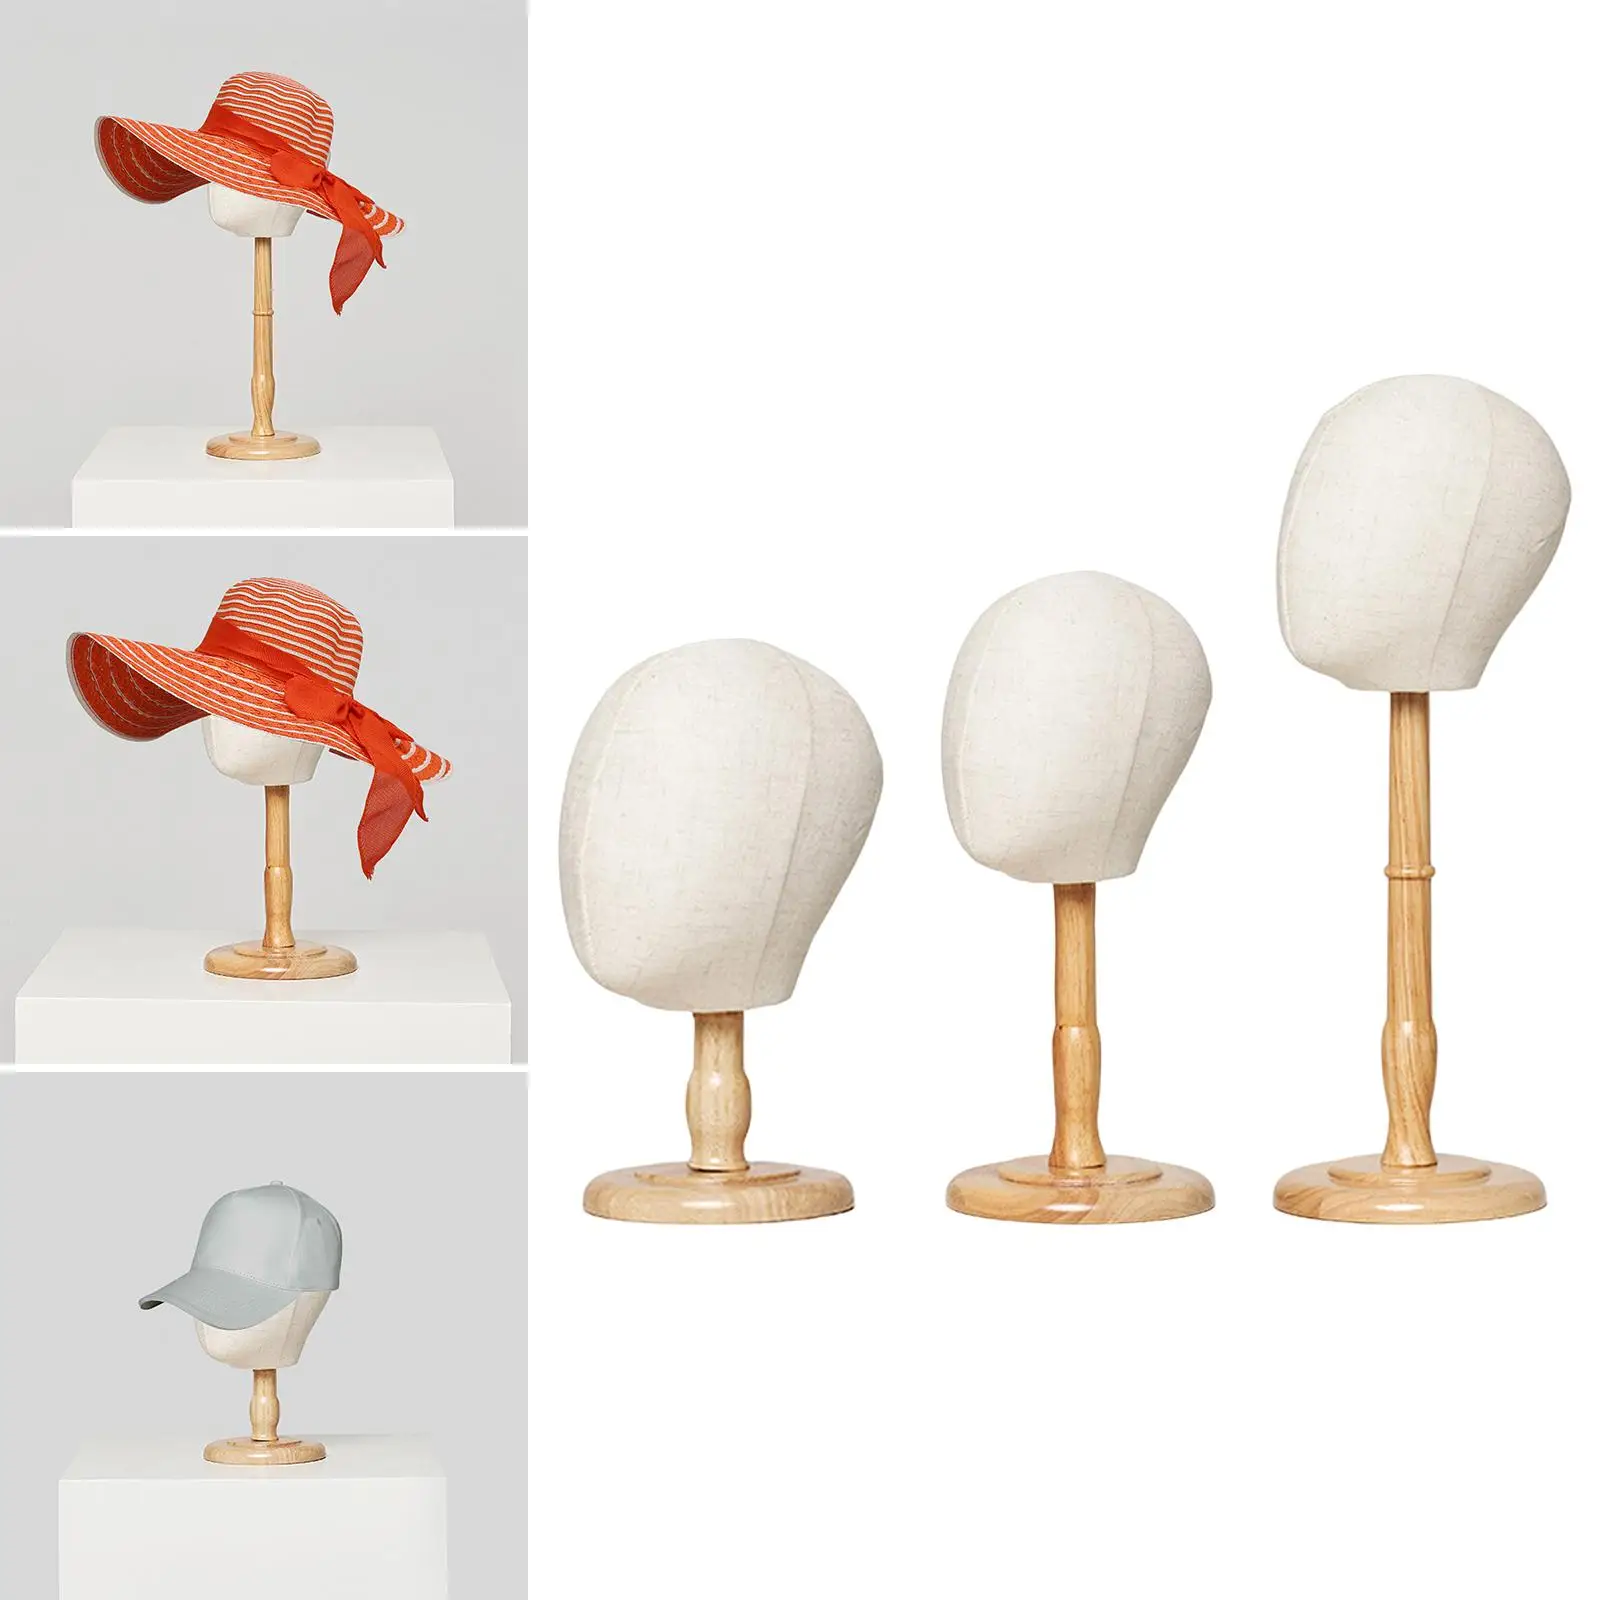 Paruka čepice čepice displej depo děti figuríně hlava modelka čepice úložný držák pro nákup mall holič tvoření stylingový schnoucí